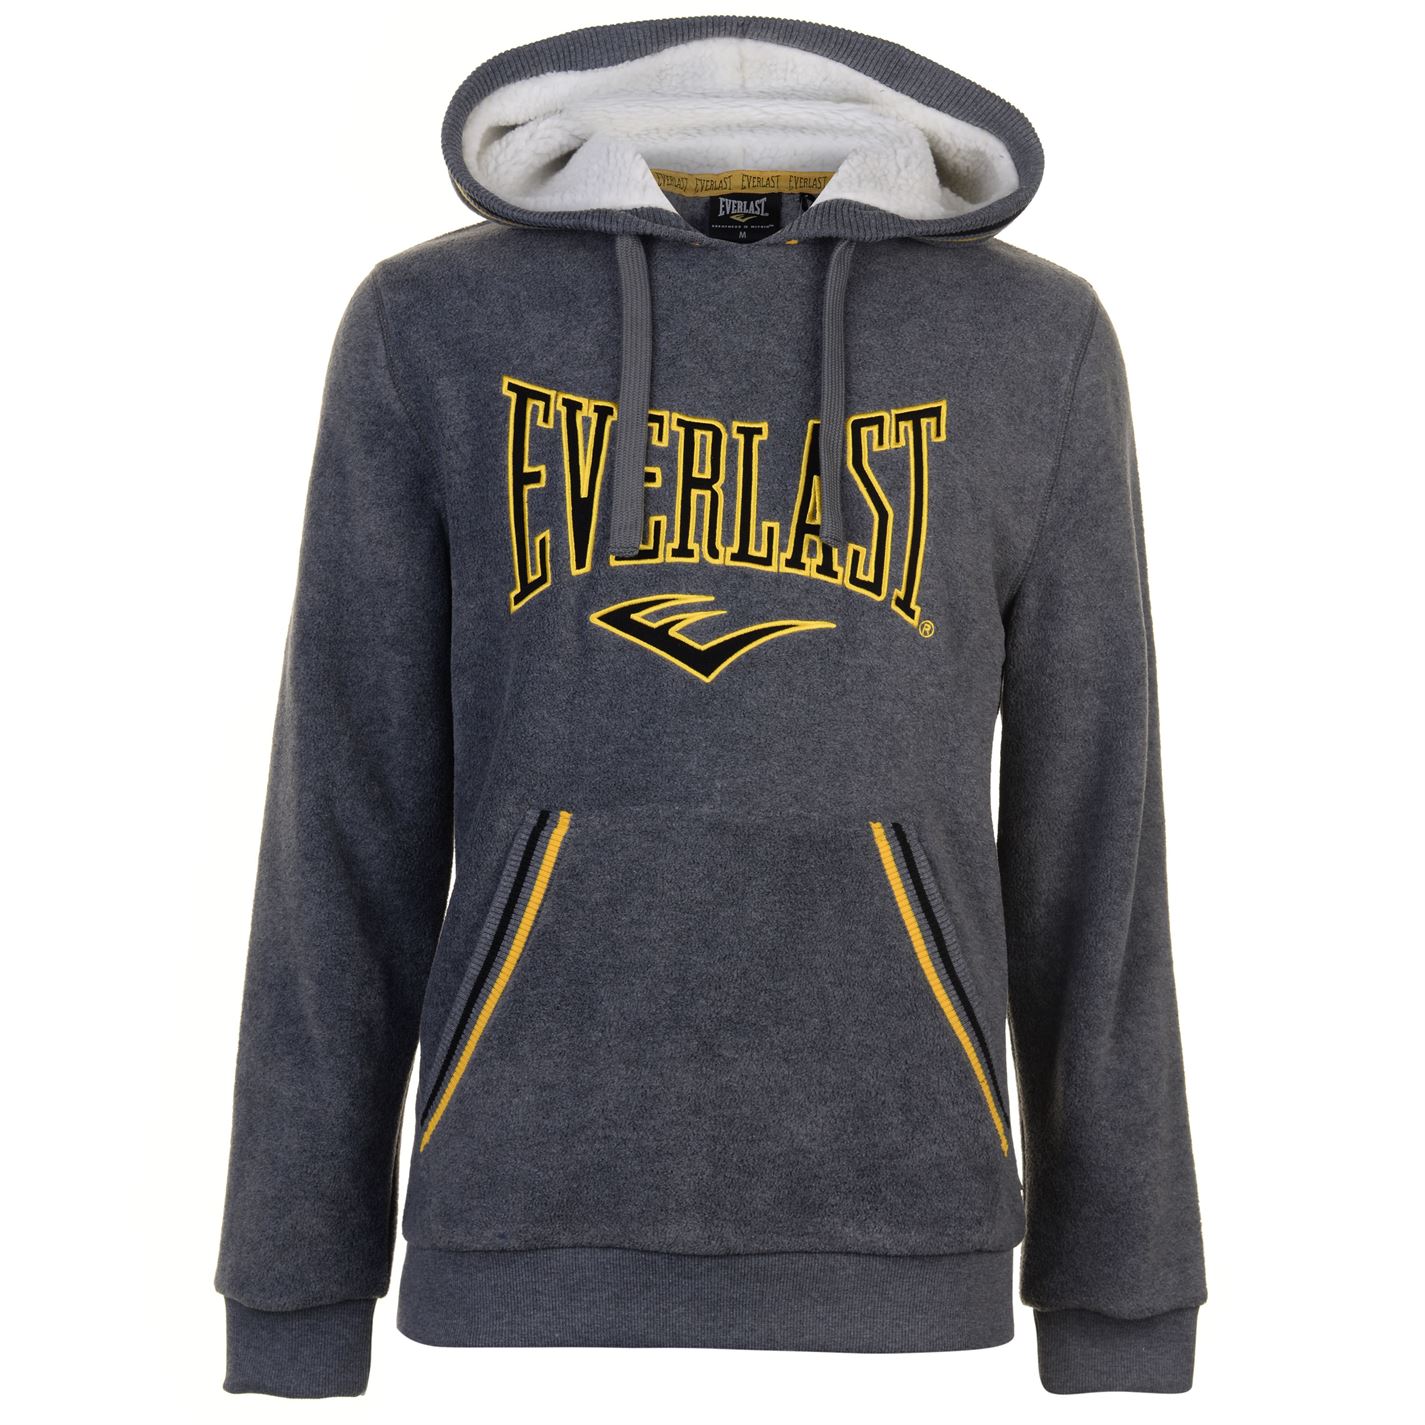 Спортивная Одежда Everlast Интернет Магазин